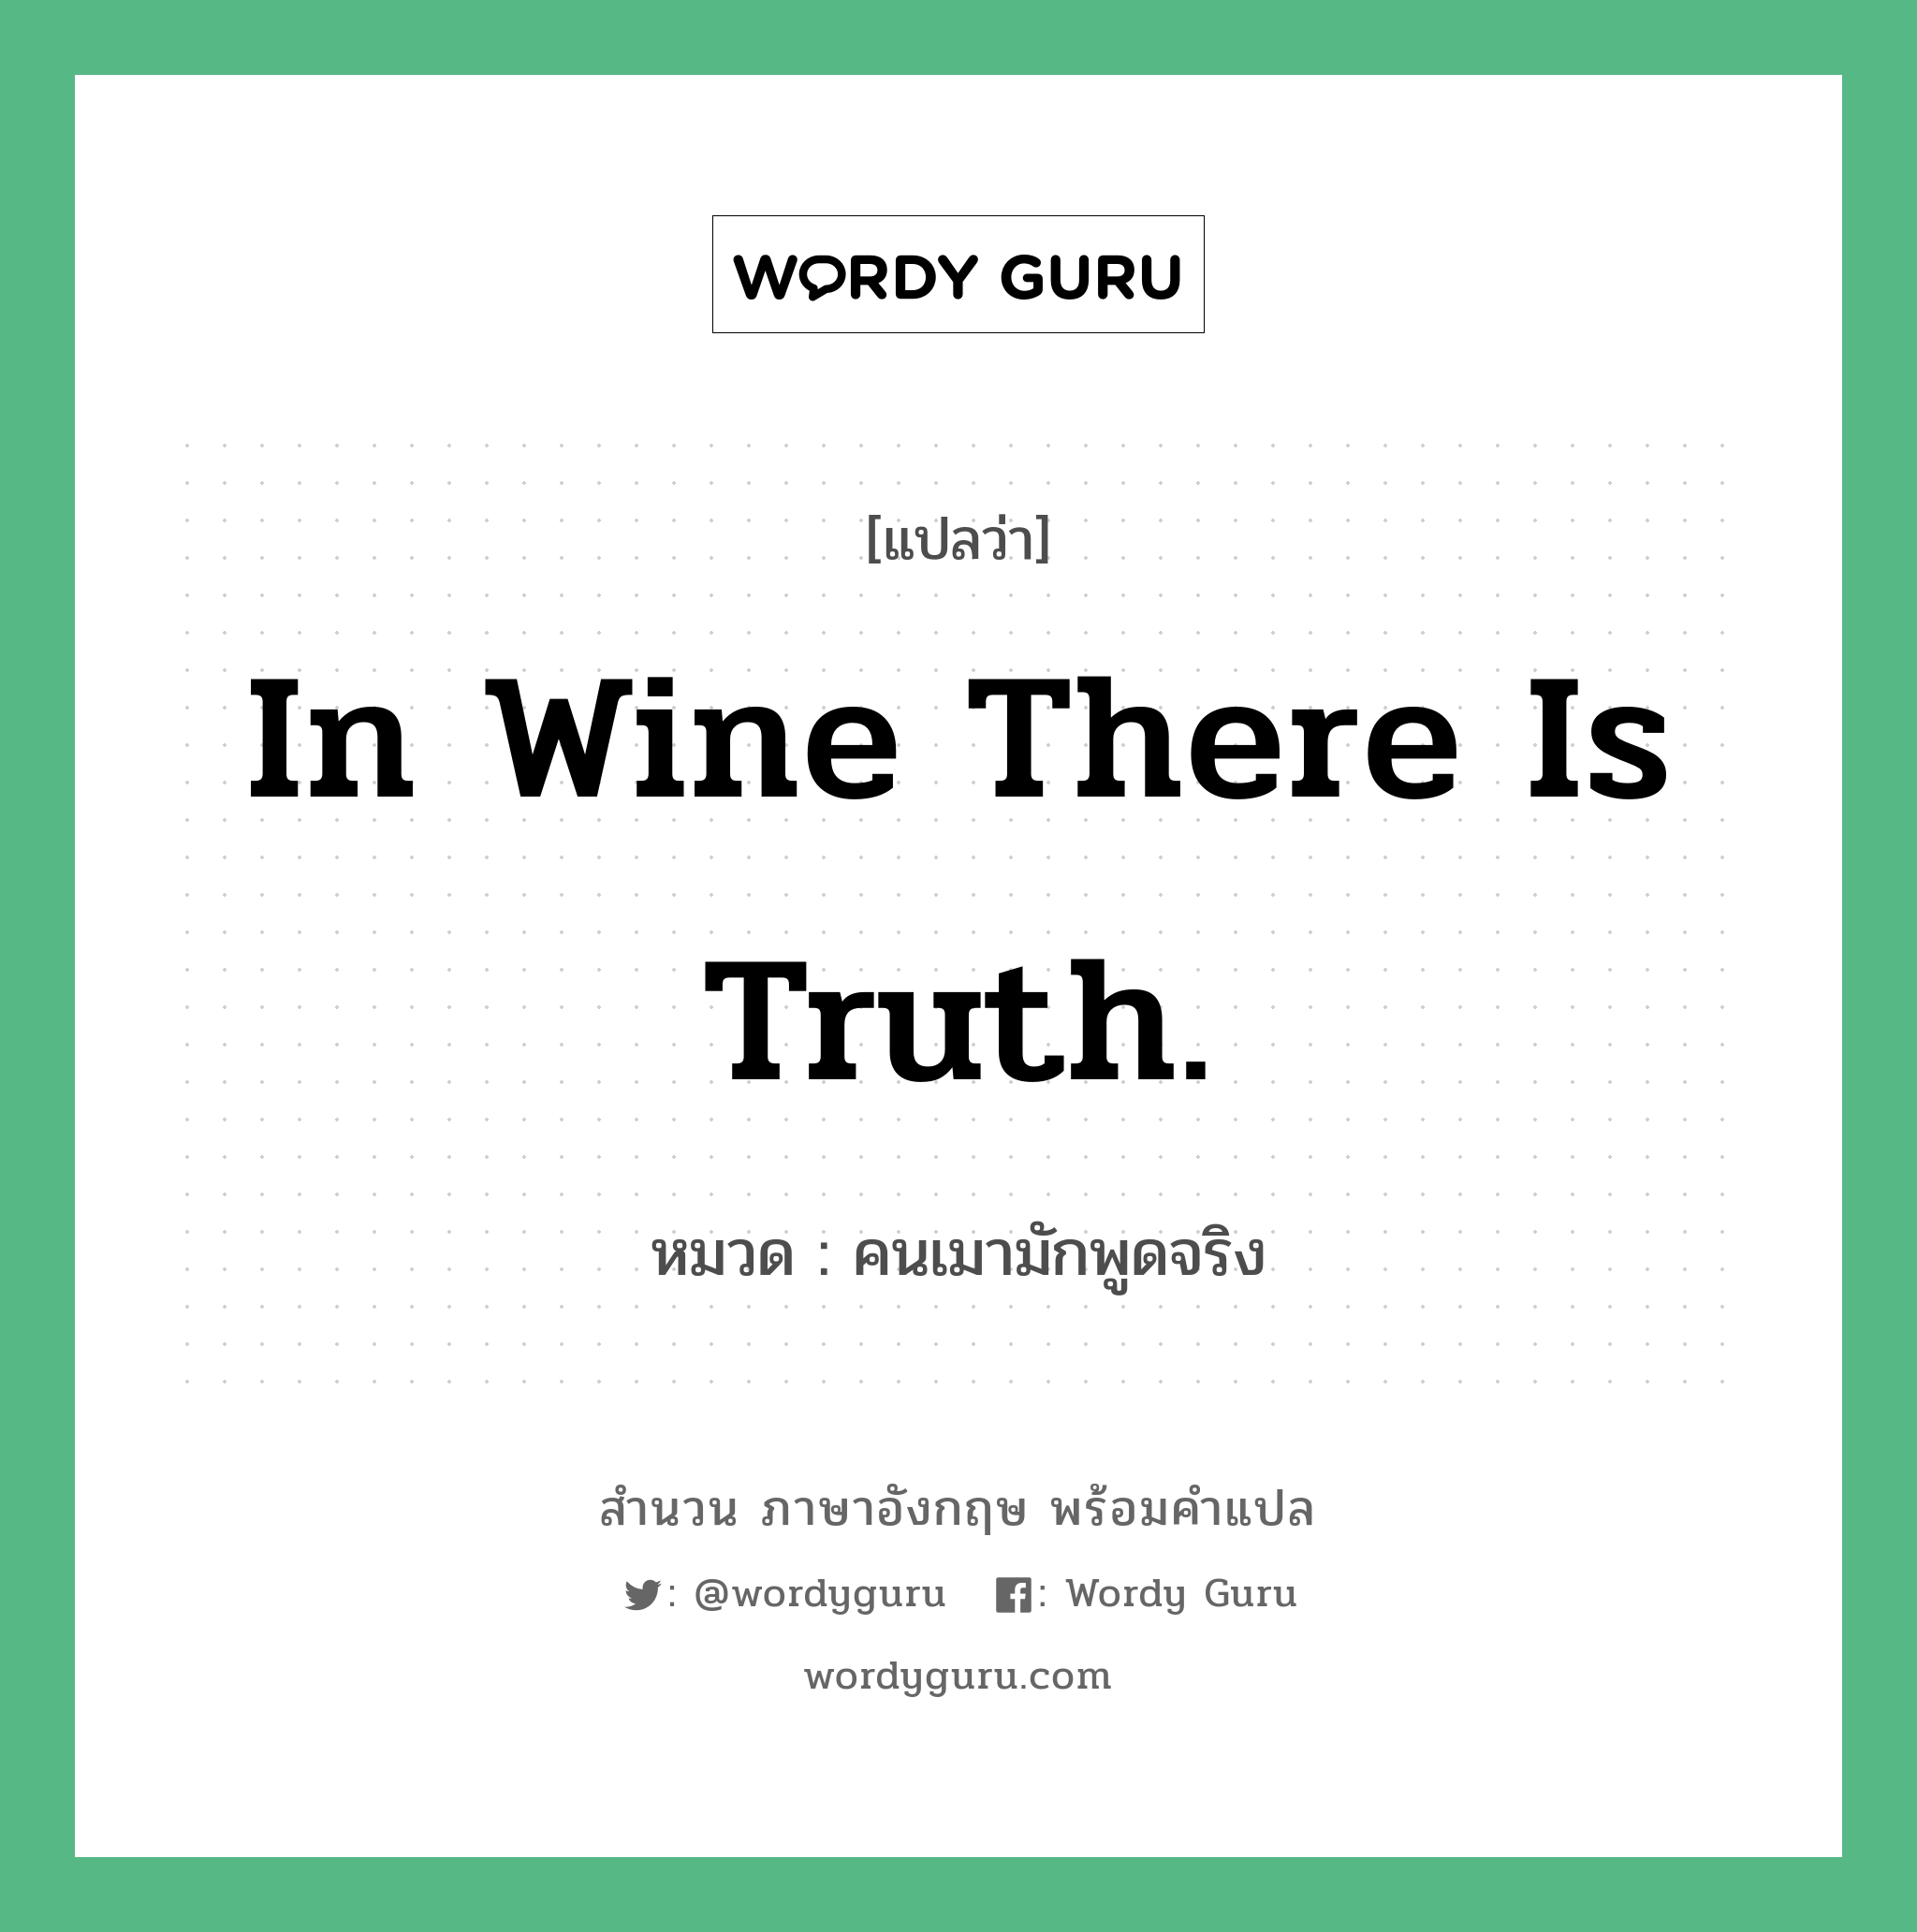 In wine there is truth. แปลว่า?, สำนวนภาษาอังกฤษ In wine there is truth. หมวด คนเมามักพูดจริง คำสุภาษิต ภาษาอังกฤษ หมวด คำสุภาษิต ภาษาอังกฤษ